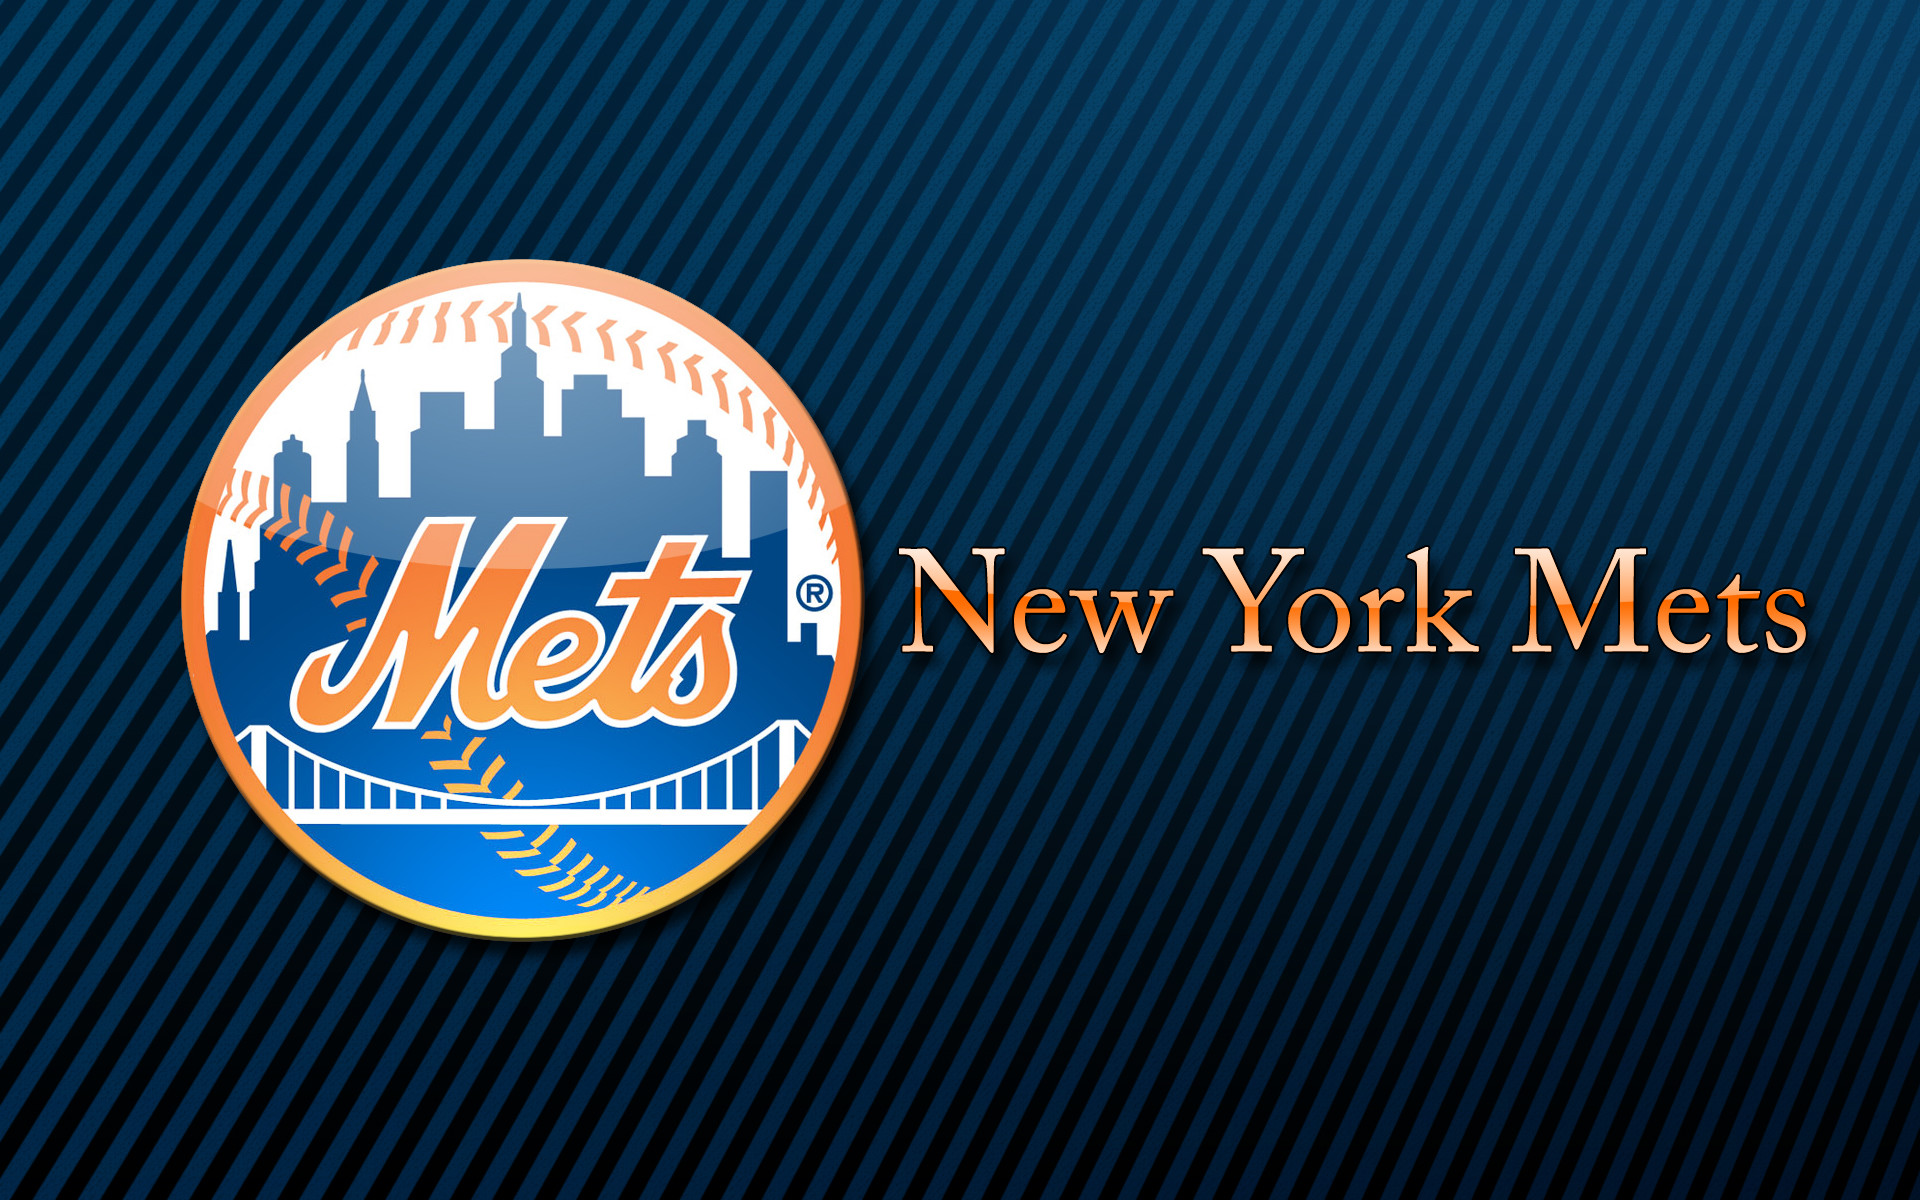 1920x1200 Free New York Mets desktop image | New York Mets wallpapers